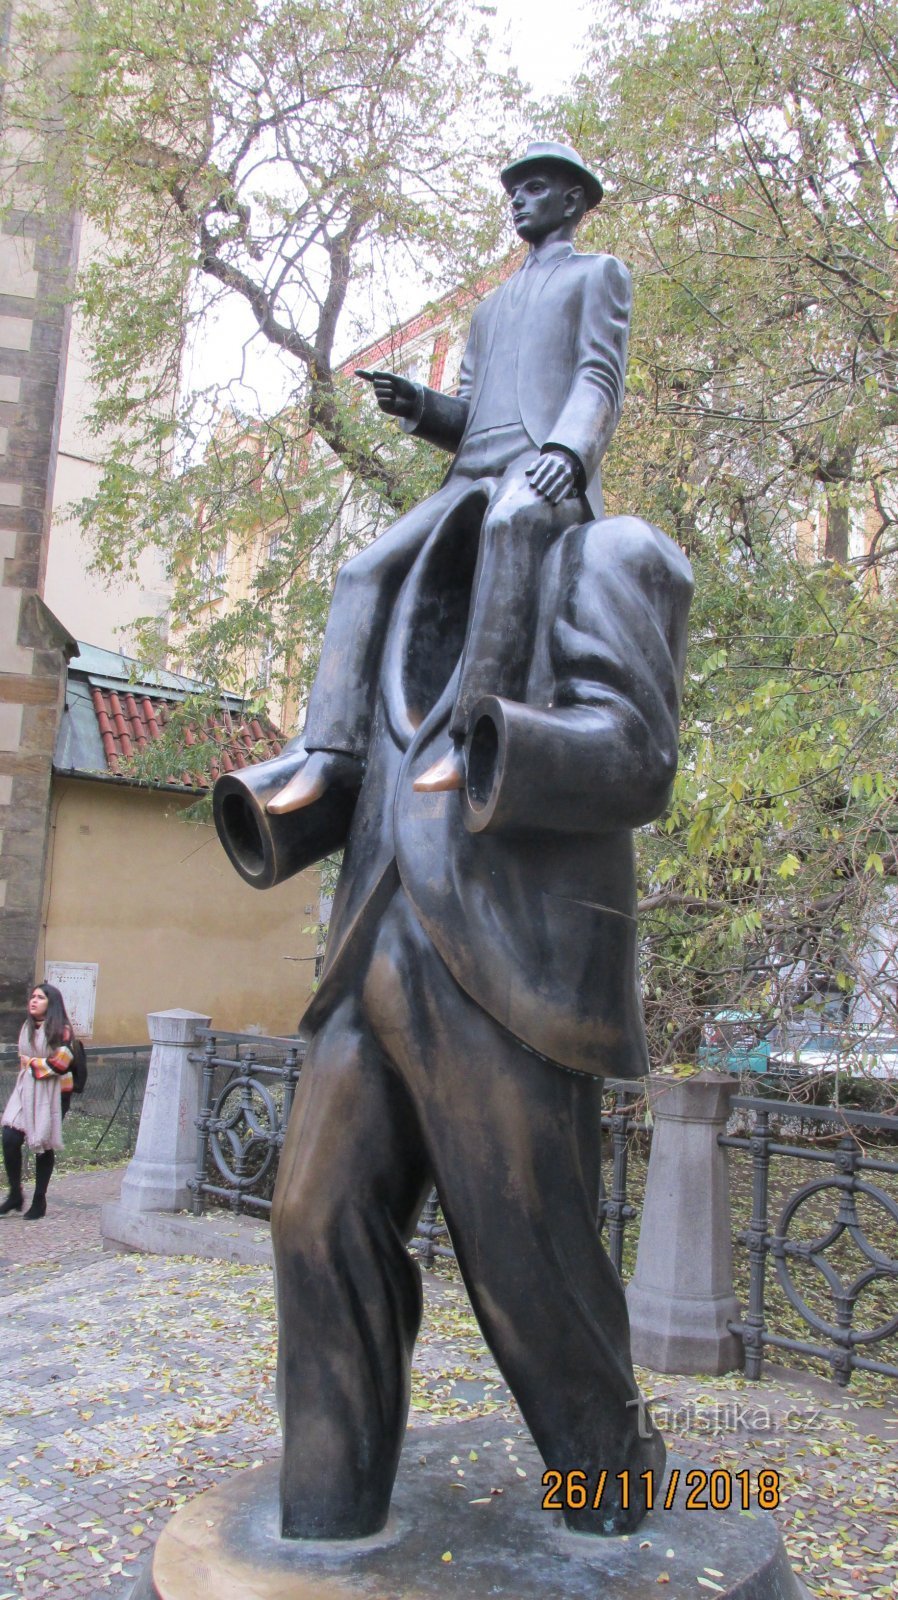 Pomnik Franza Kafki